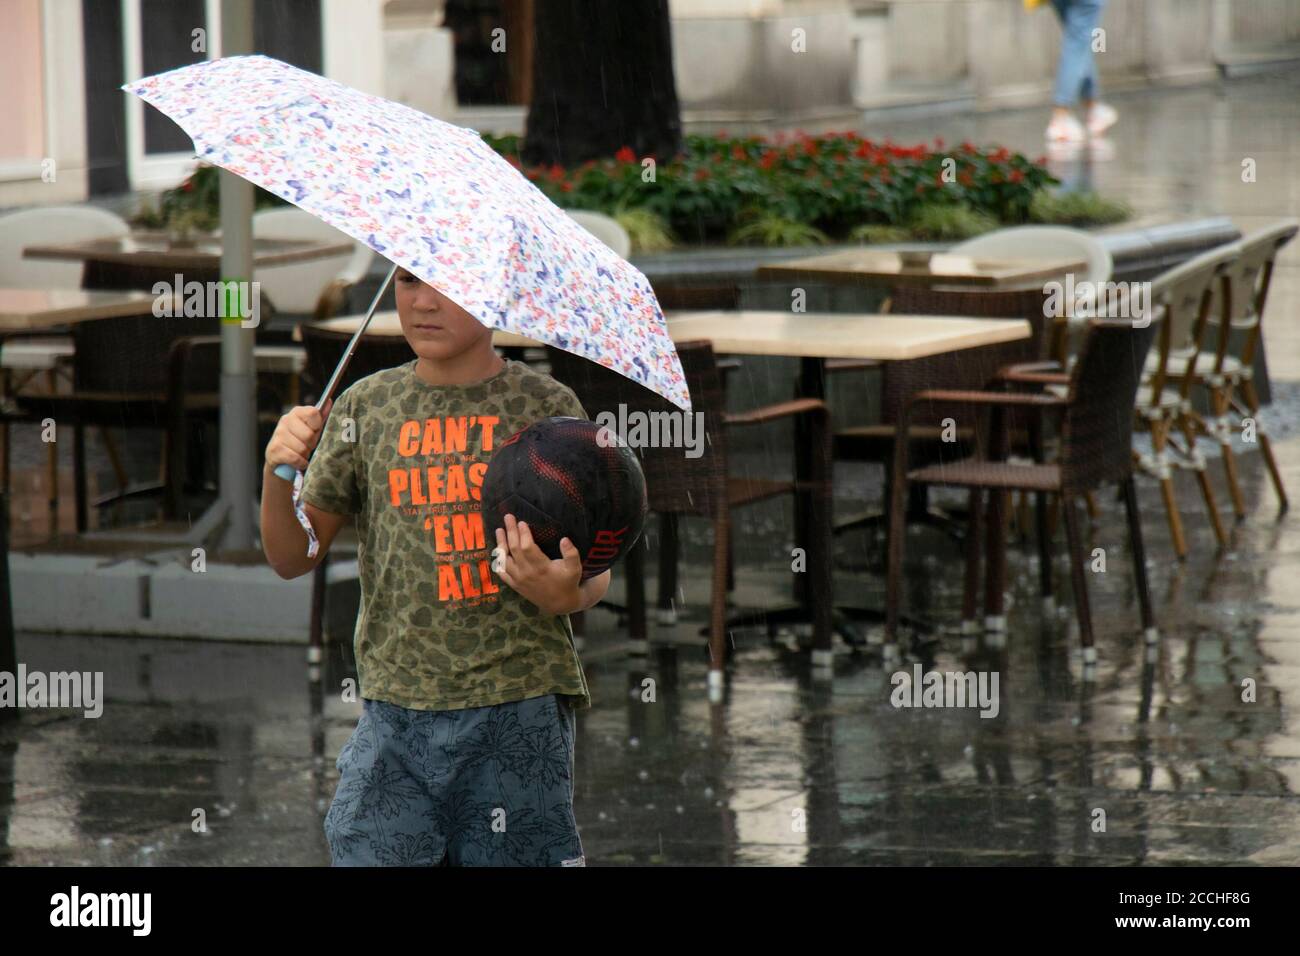 Belgrad, Serbien - 5. August 2020: Kleiner Junge mit einem Basketball, der an einem regnerischen Tag in der Fußgängerzone der Stadt unter dem Regenschirm läuft Stockfoto